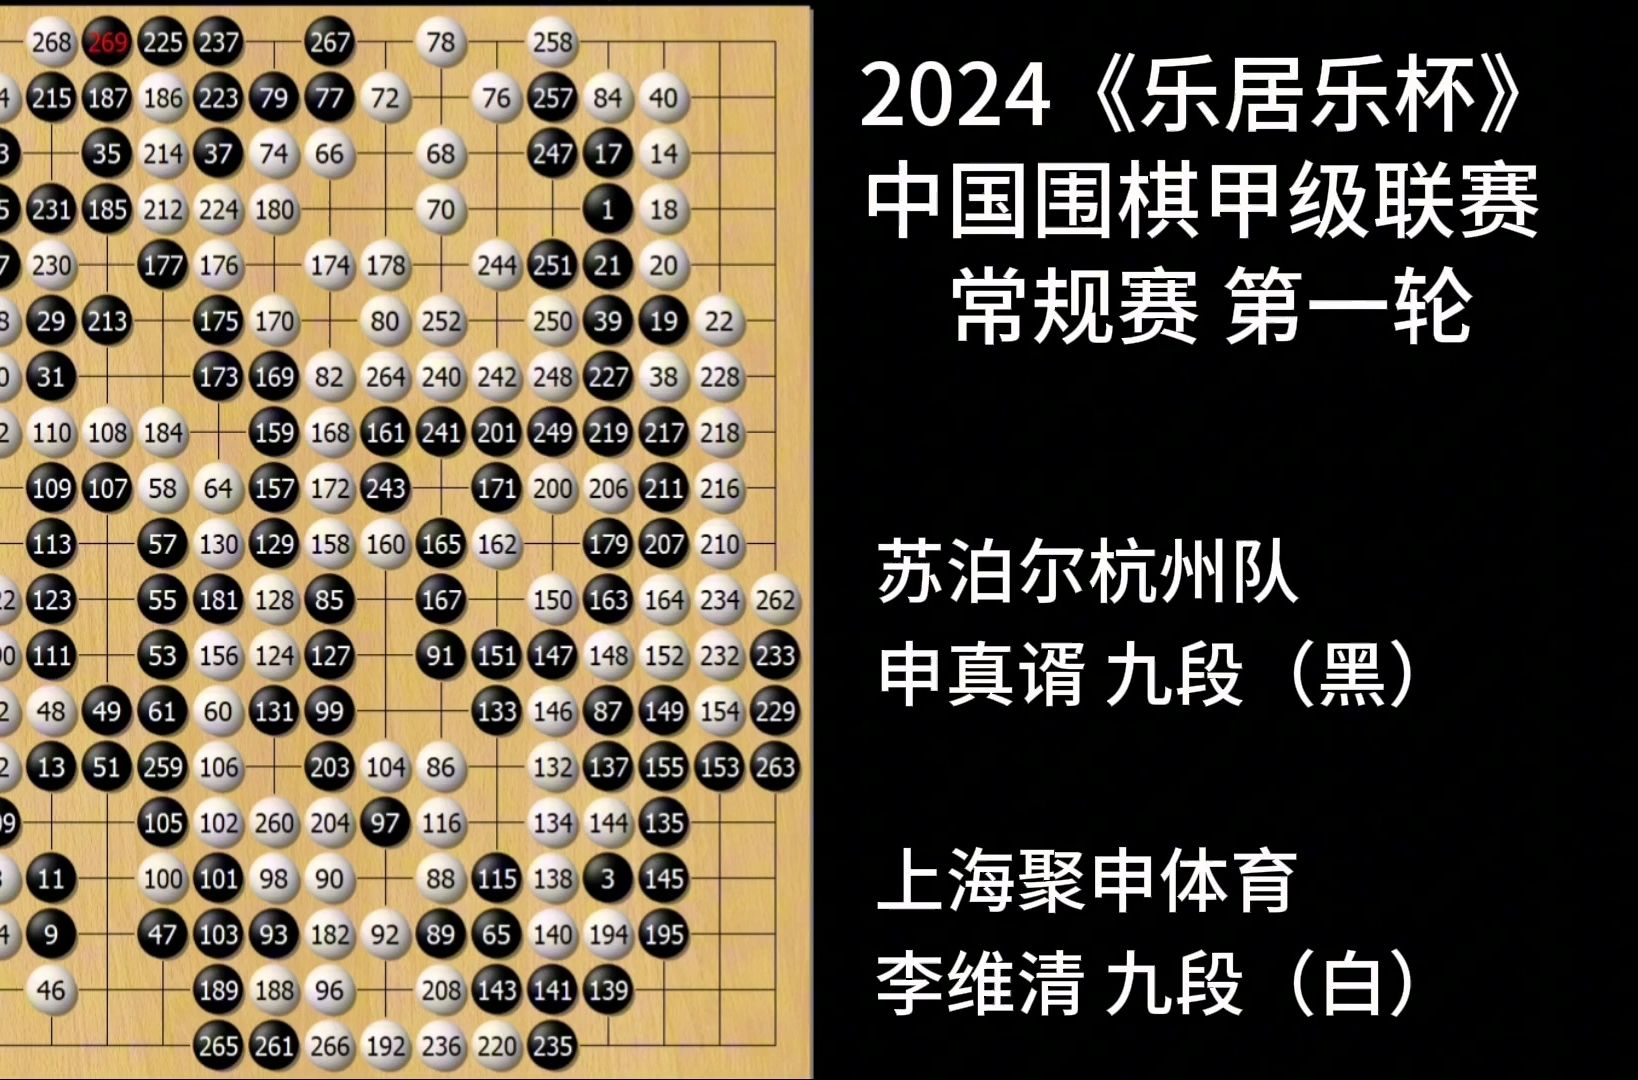 高手棋谱系列:第26届中国围甲常规赛第一轮申真谞vs李维清